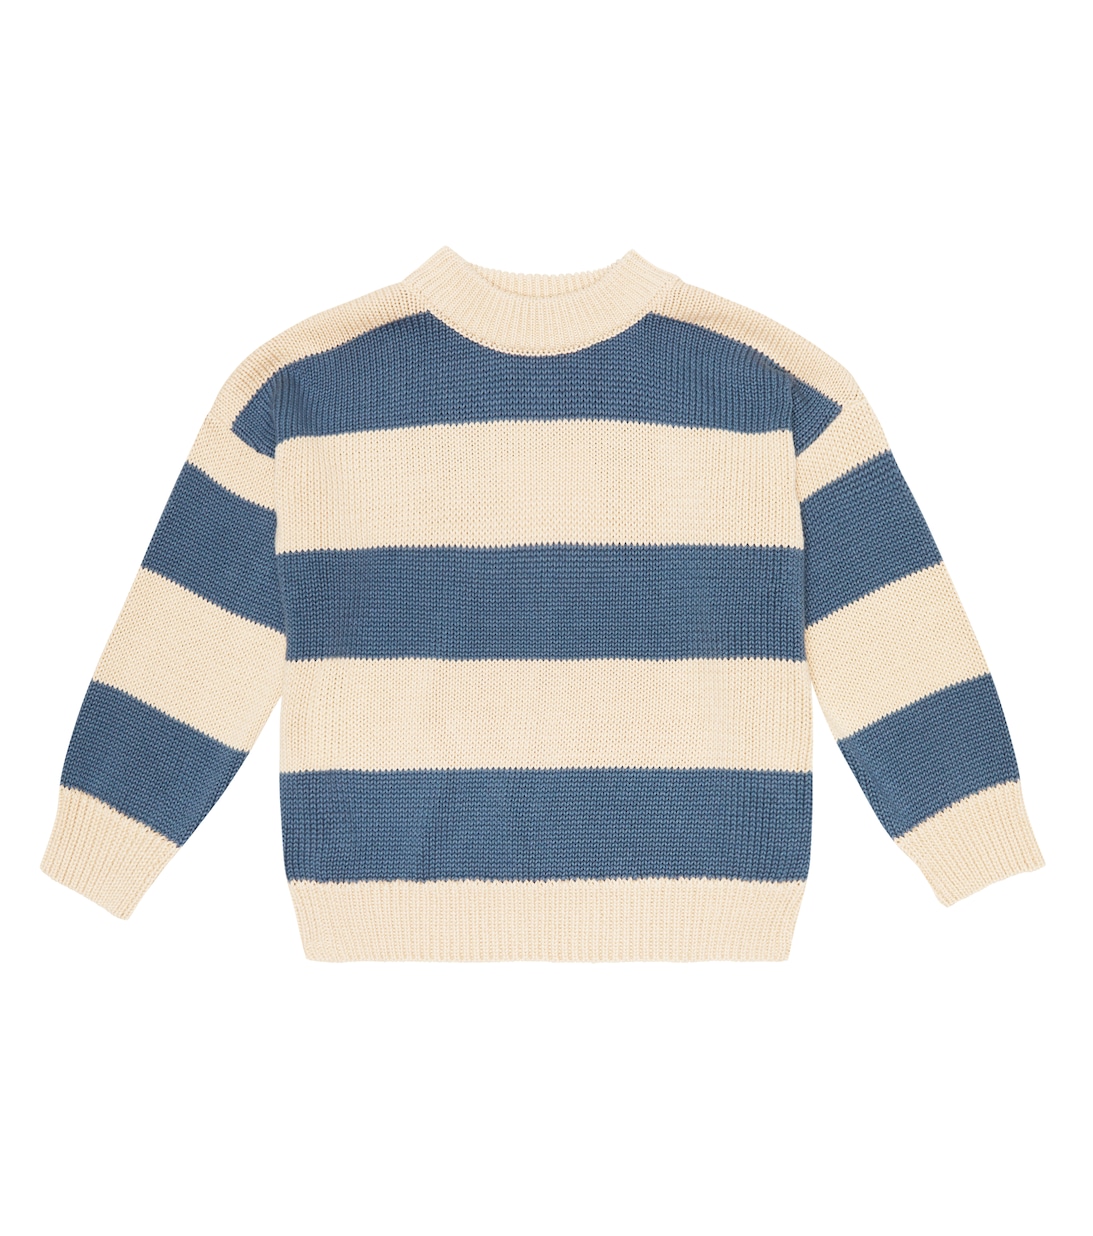 цена Полосатый свитер Emanuelle из хлопка The New Society, разноцветный